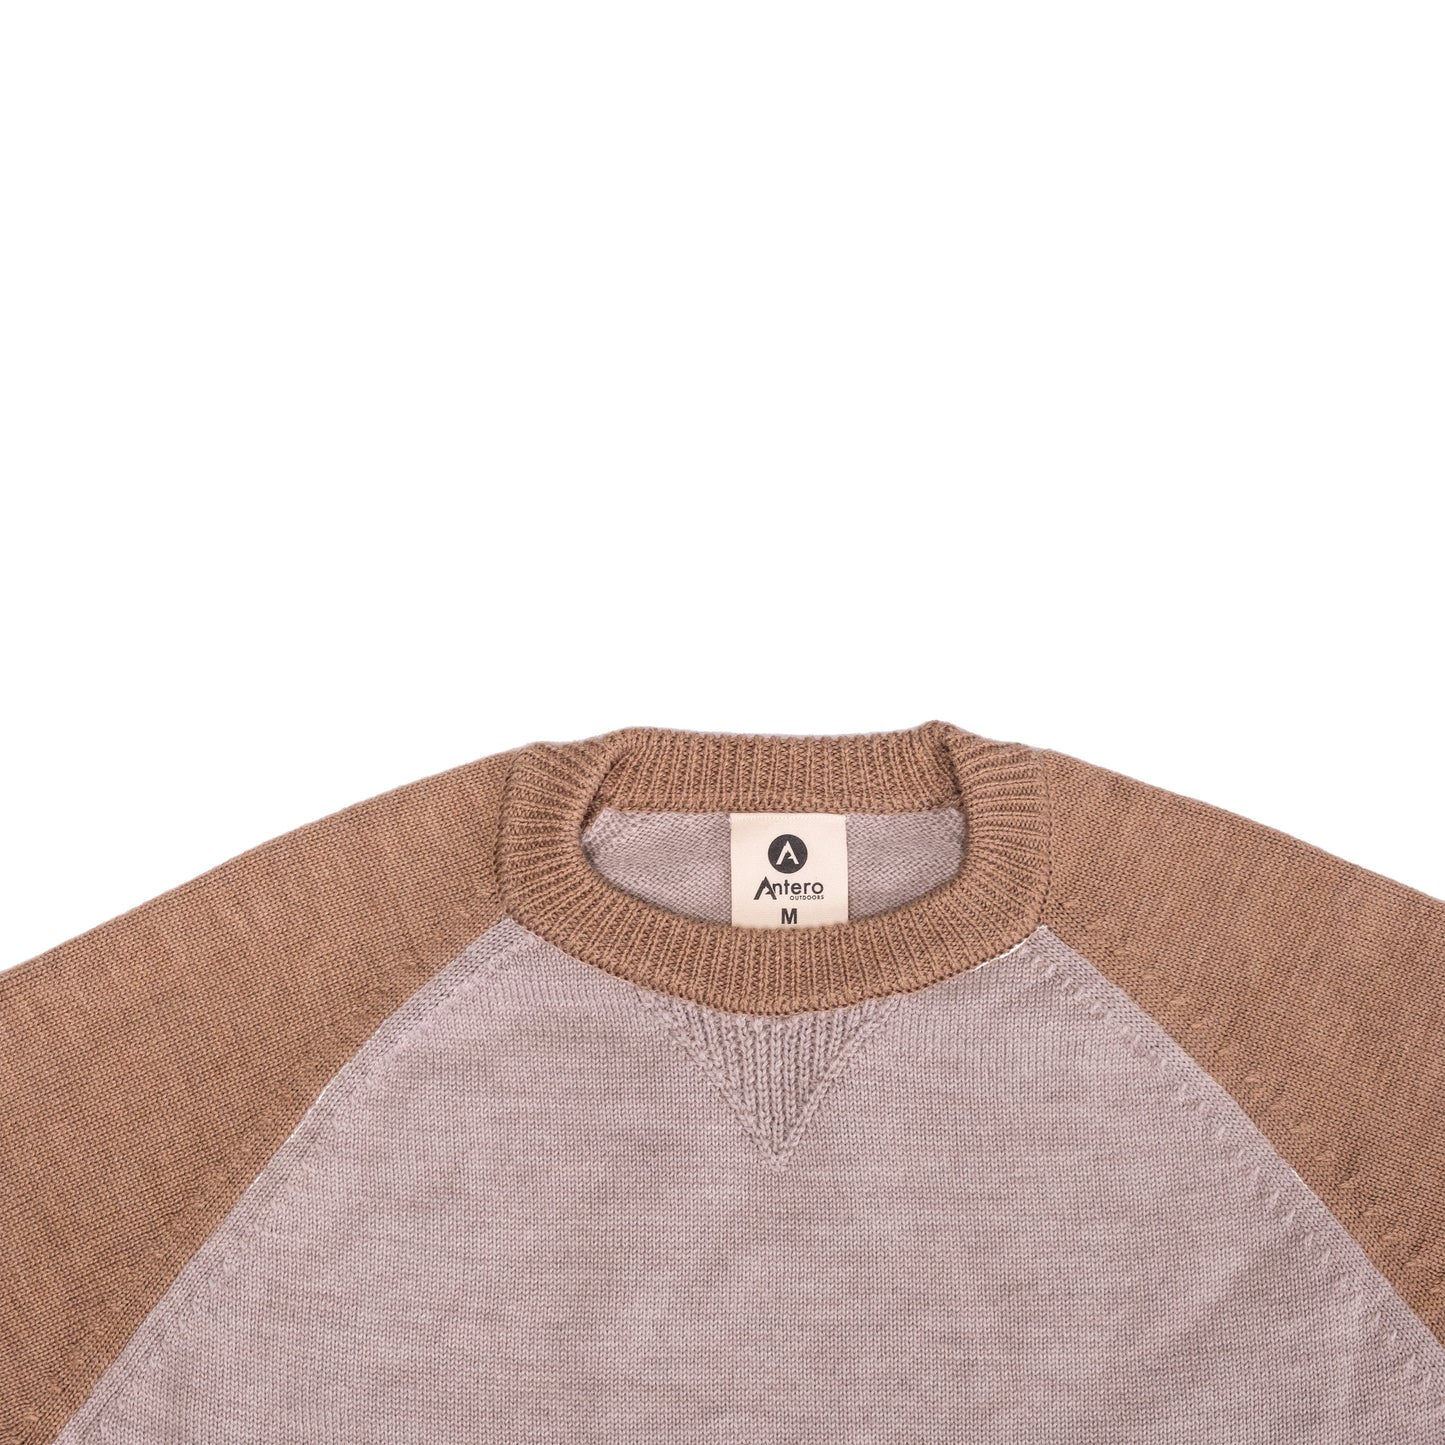 Colorado Merino Wool Sweater-Sand/Tan